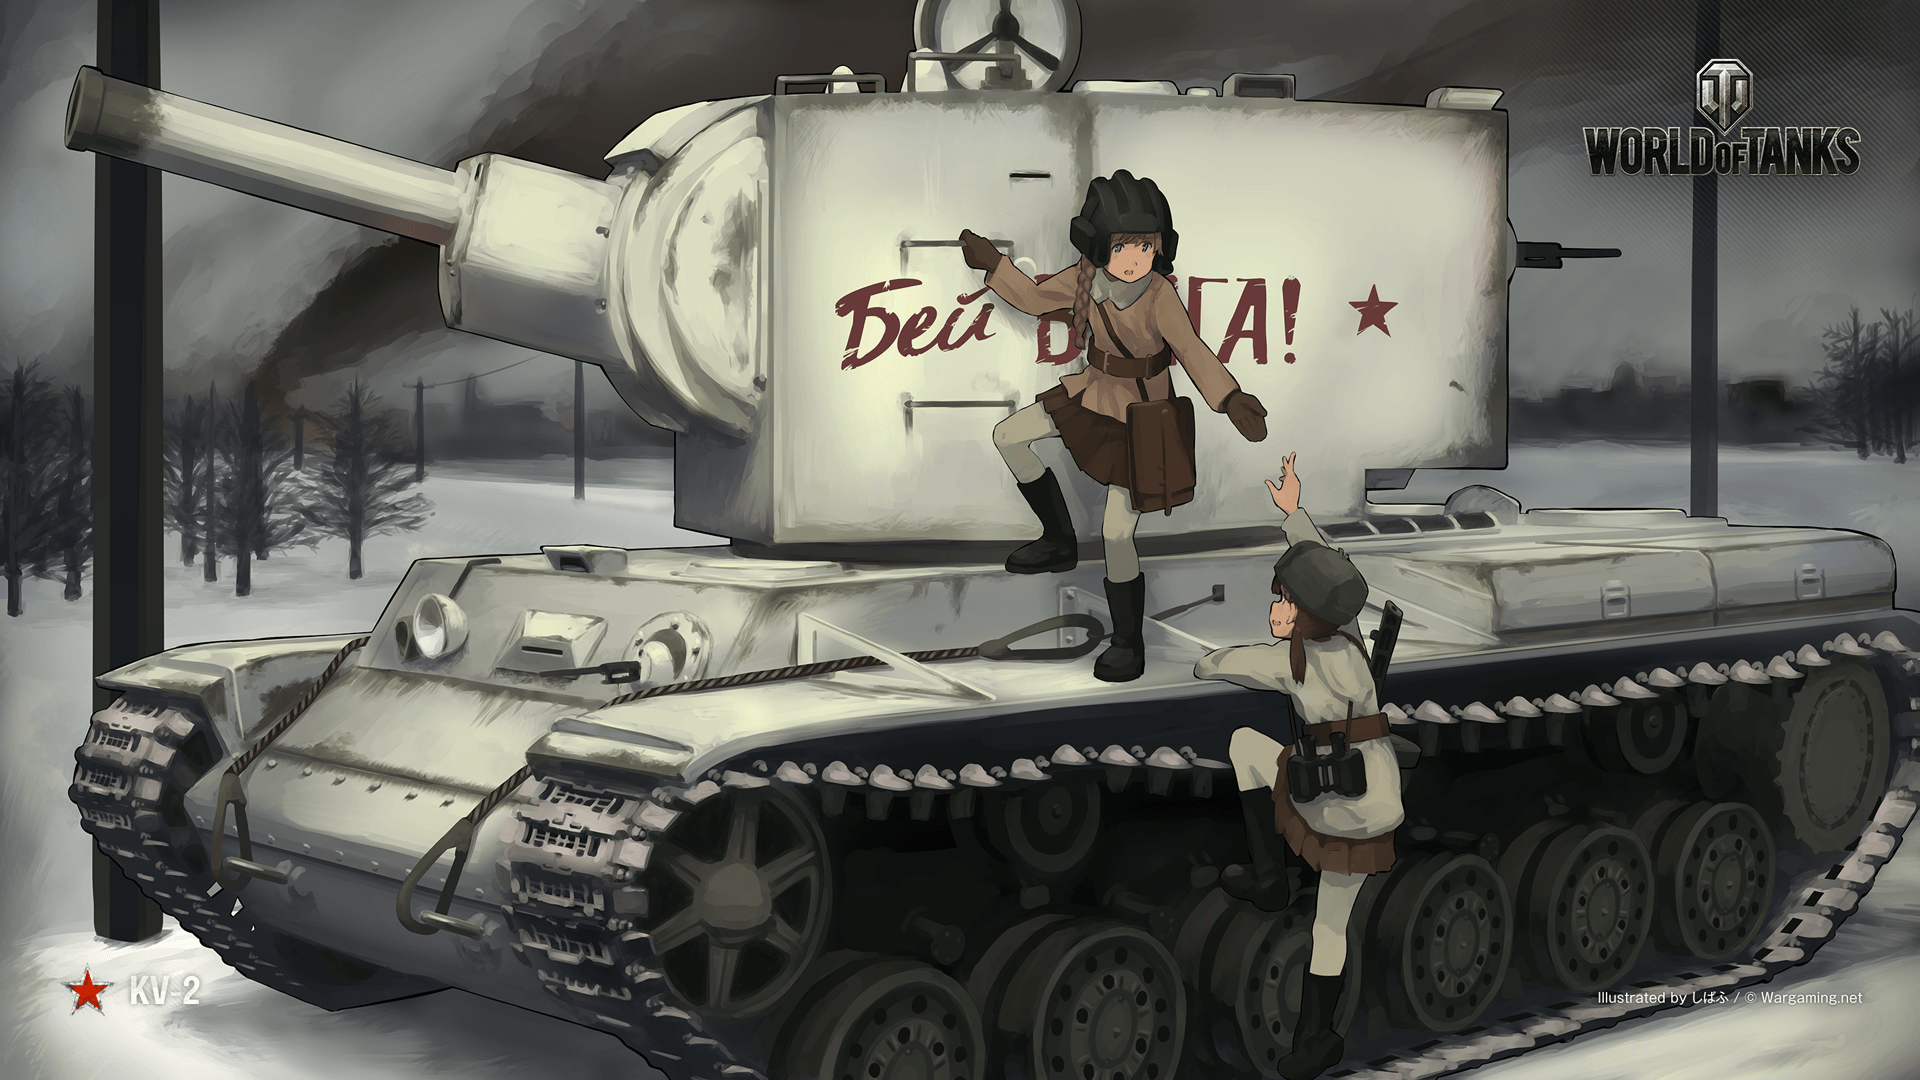 Anime v2 Anime art style 90s medium military tank by krogher22 on DeviantArt